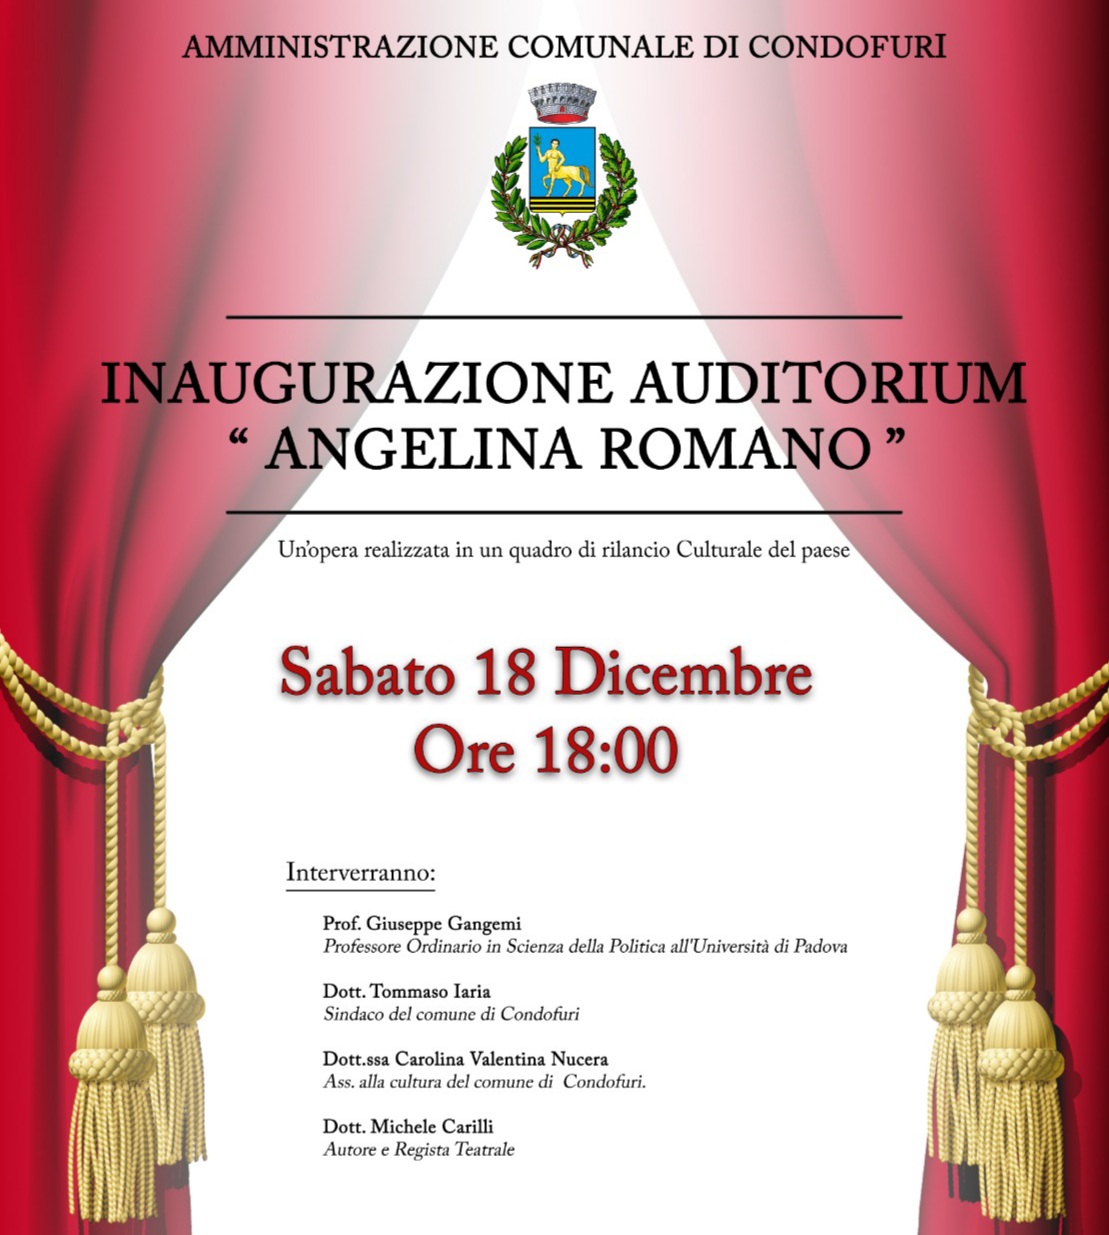 Un auditorium per Angelina Romano (e per la verità storica)